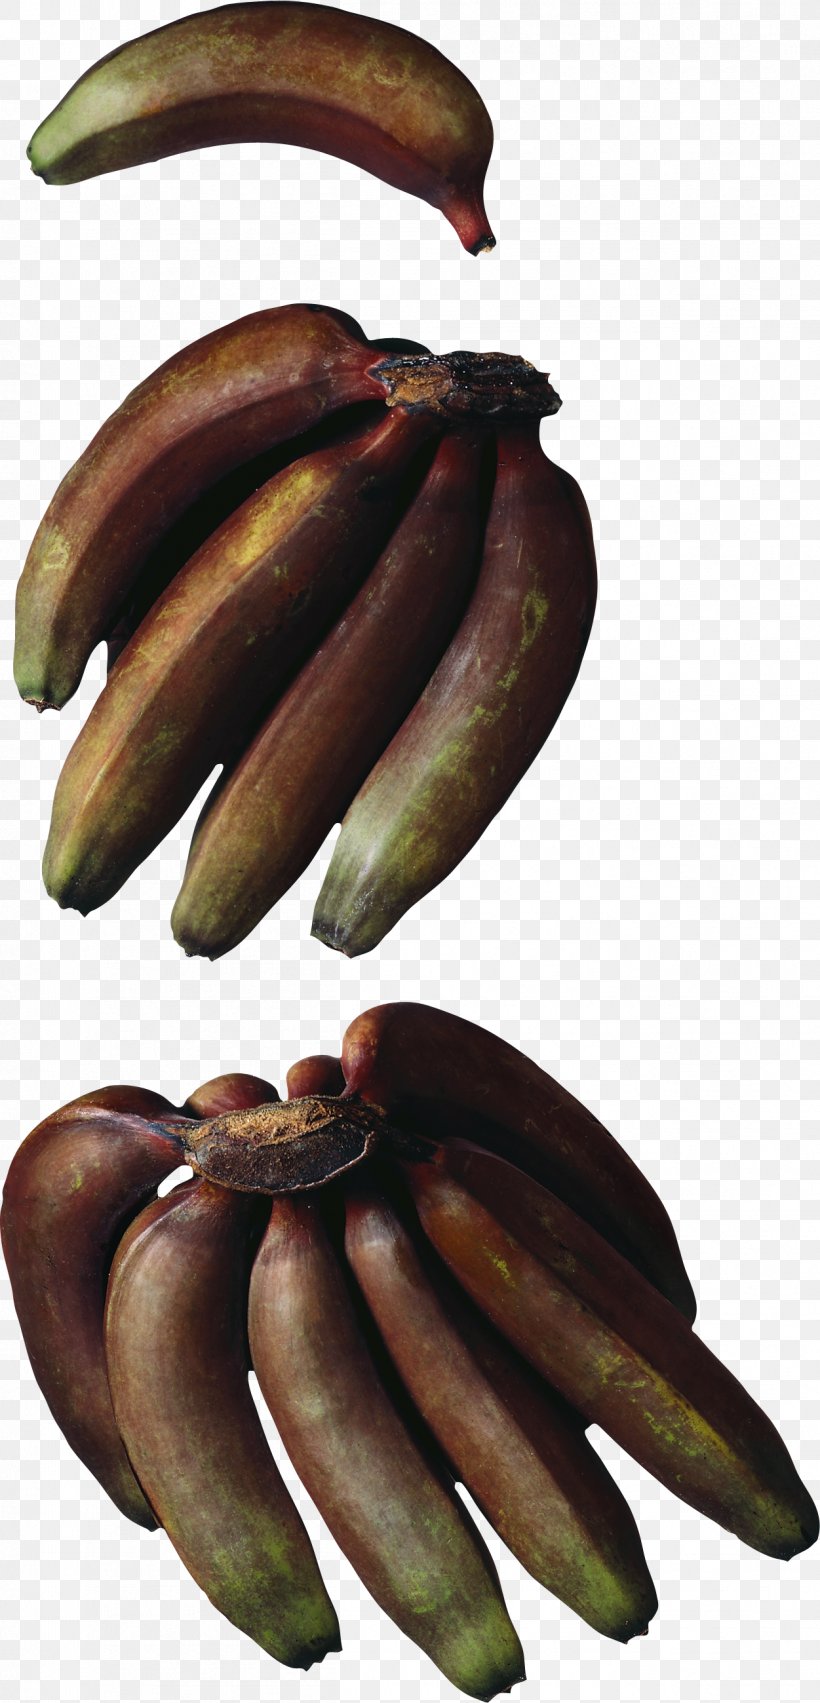 Cooking Banana Hardy Banana Red Banana Musa × Paradisiaca, PNG, 1251x2599px, Banana, Banana Family, Cooking, Cooking Banana, Cooking Plantain Download Free